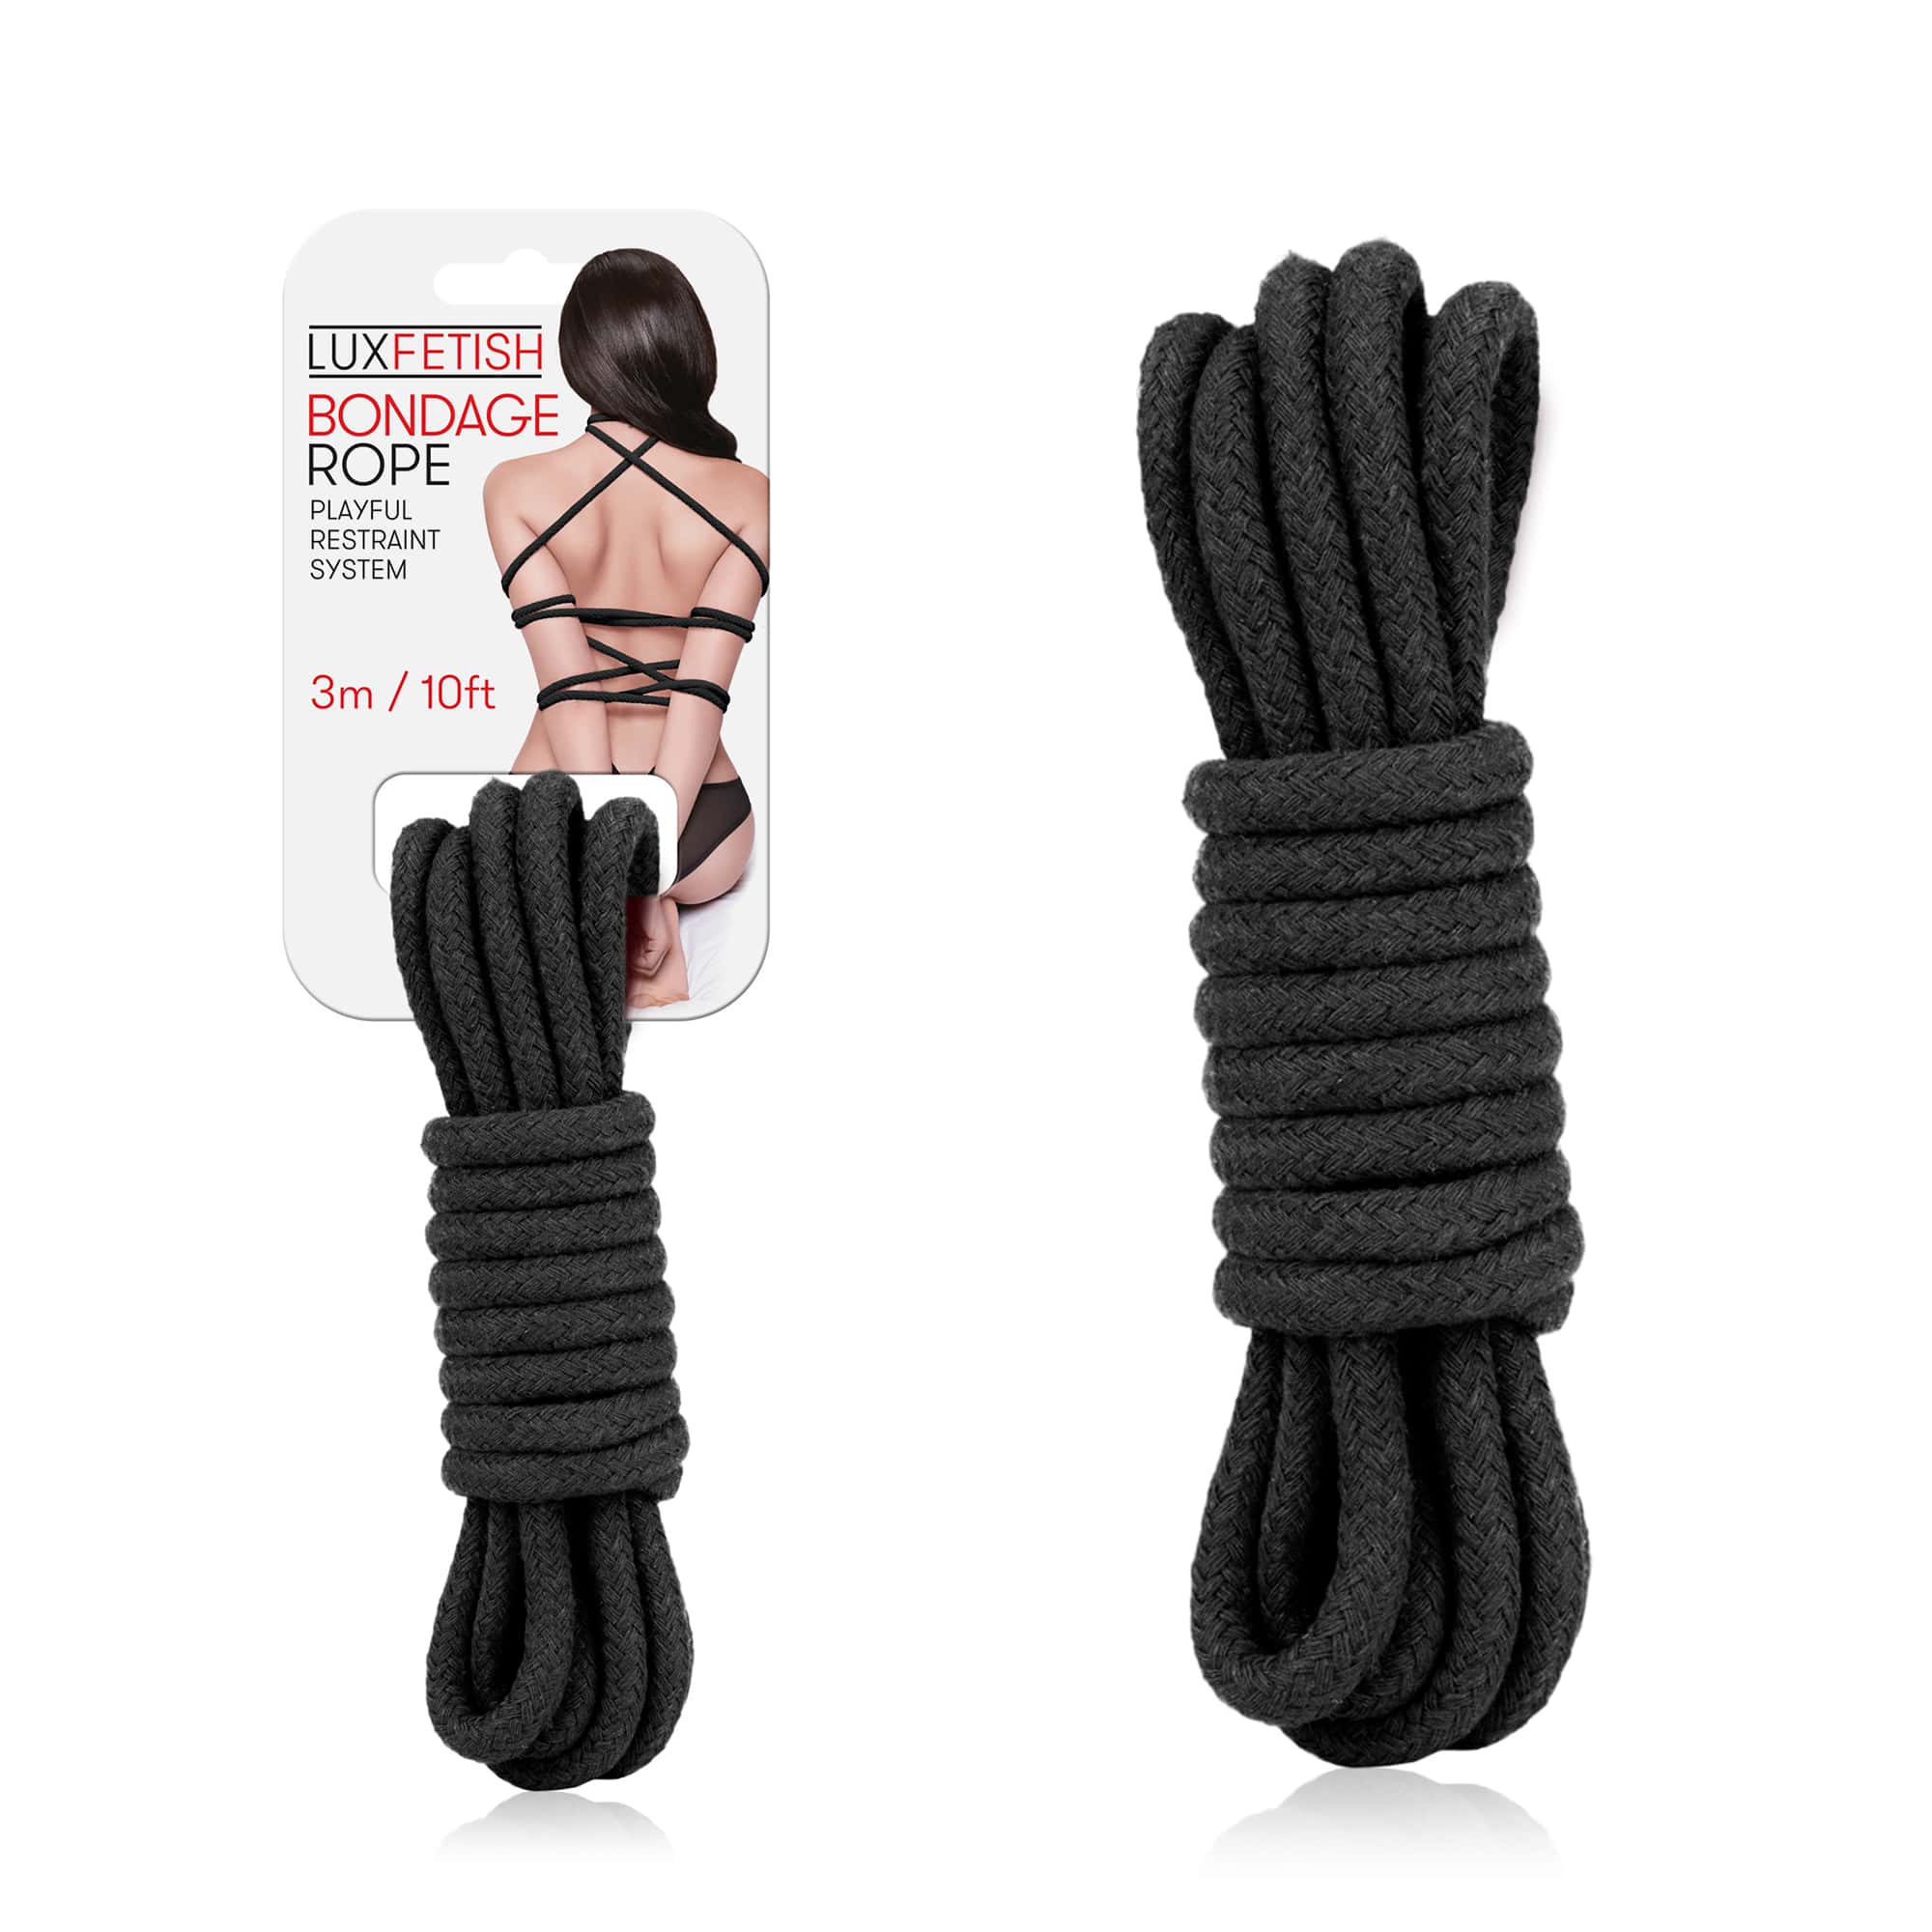 Shibari Japanese Bondage Rope image image